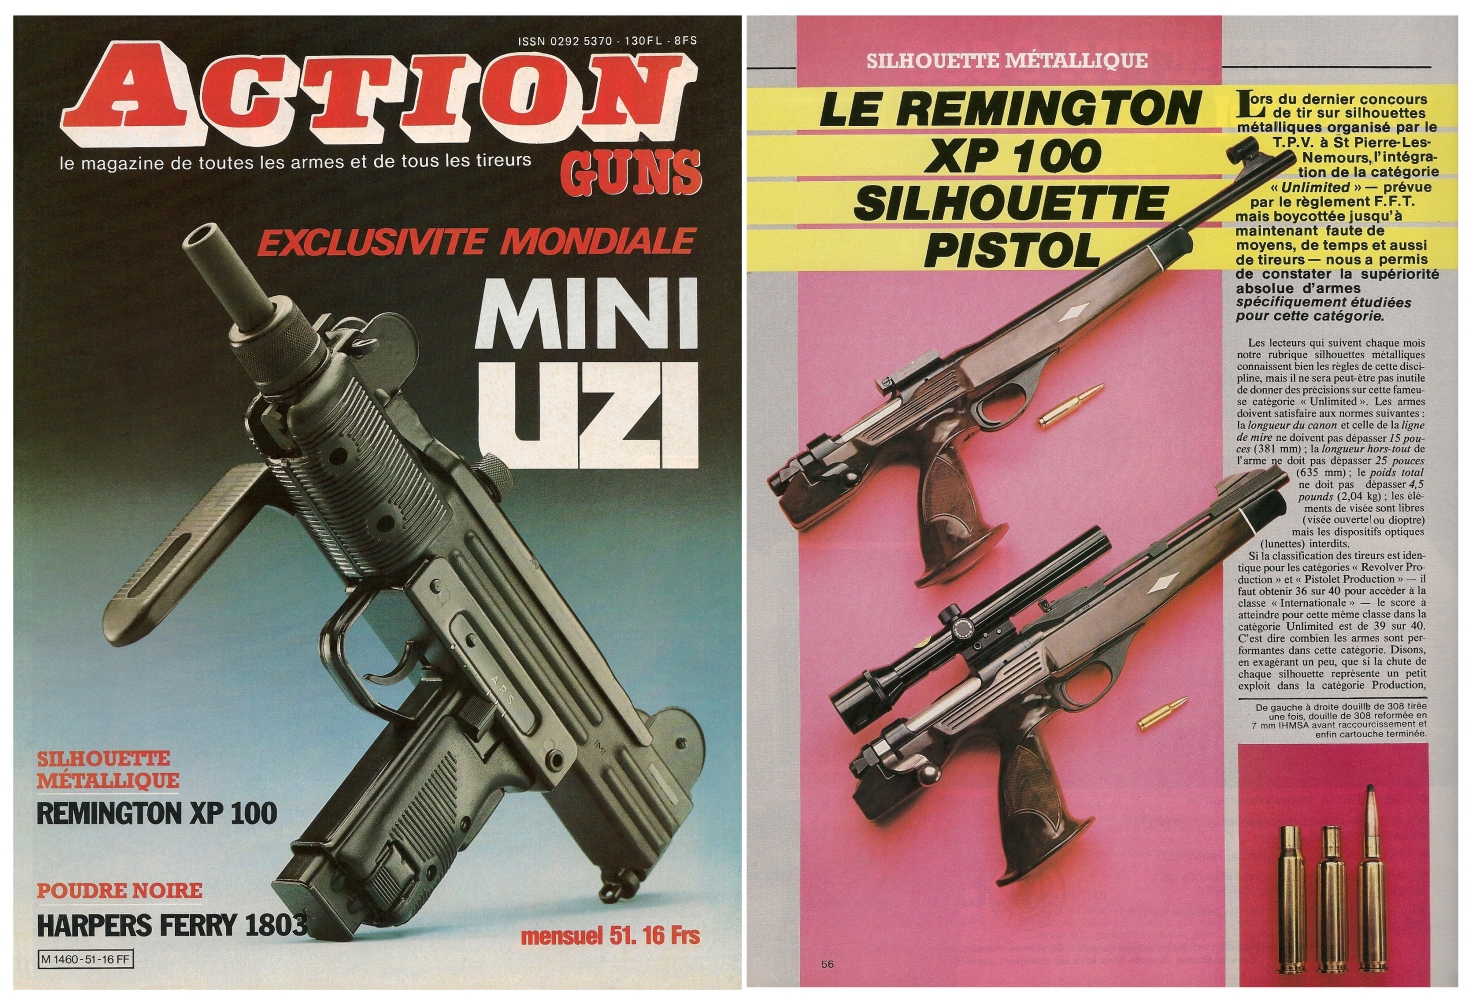 Le banc d’essai du pistolet Remington modèle XP 100 a été publié sur 4 pages dans le magazine Action Guns n° 51 (mars 1983). 